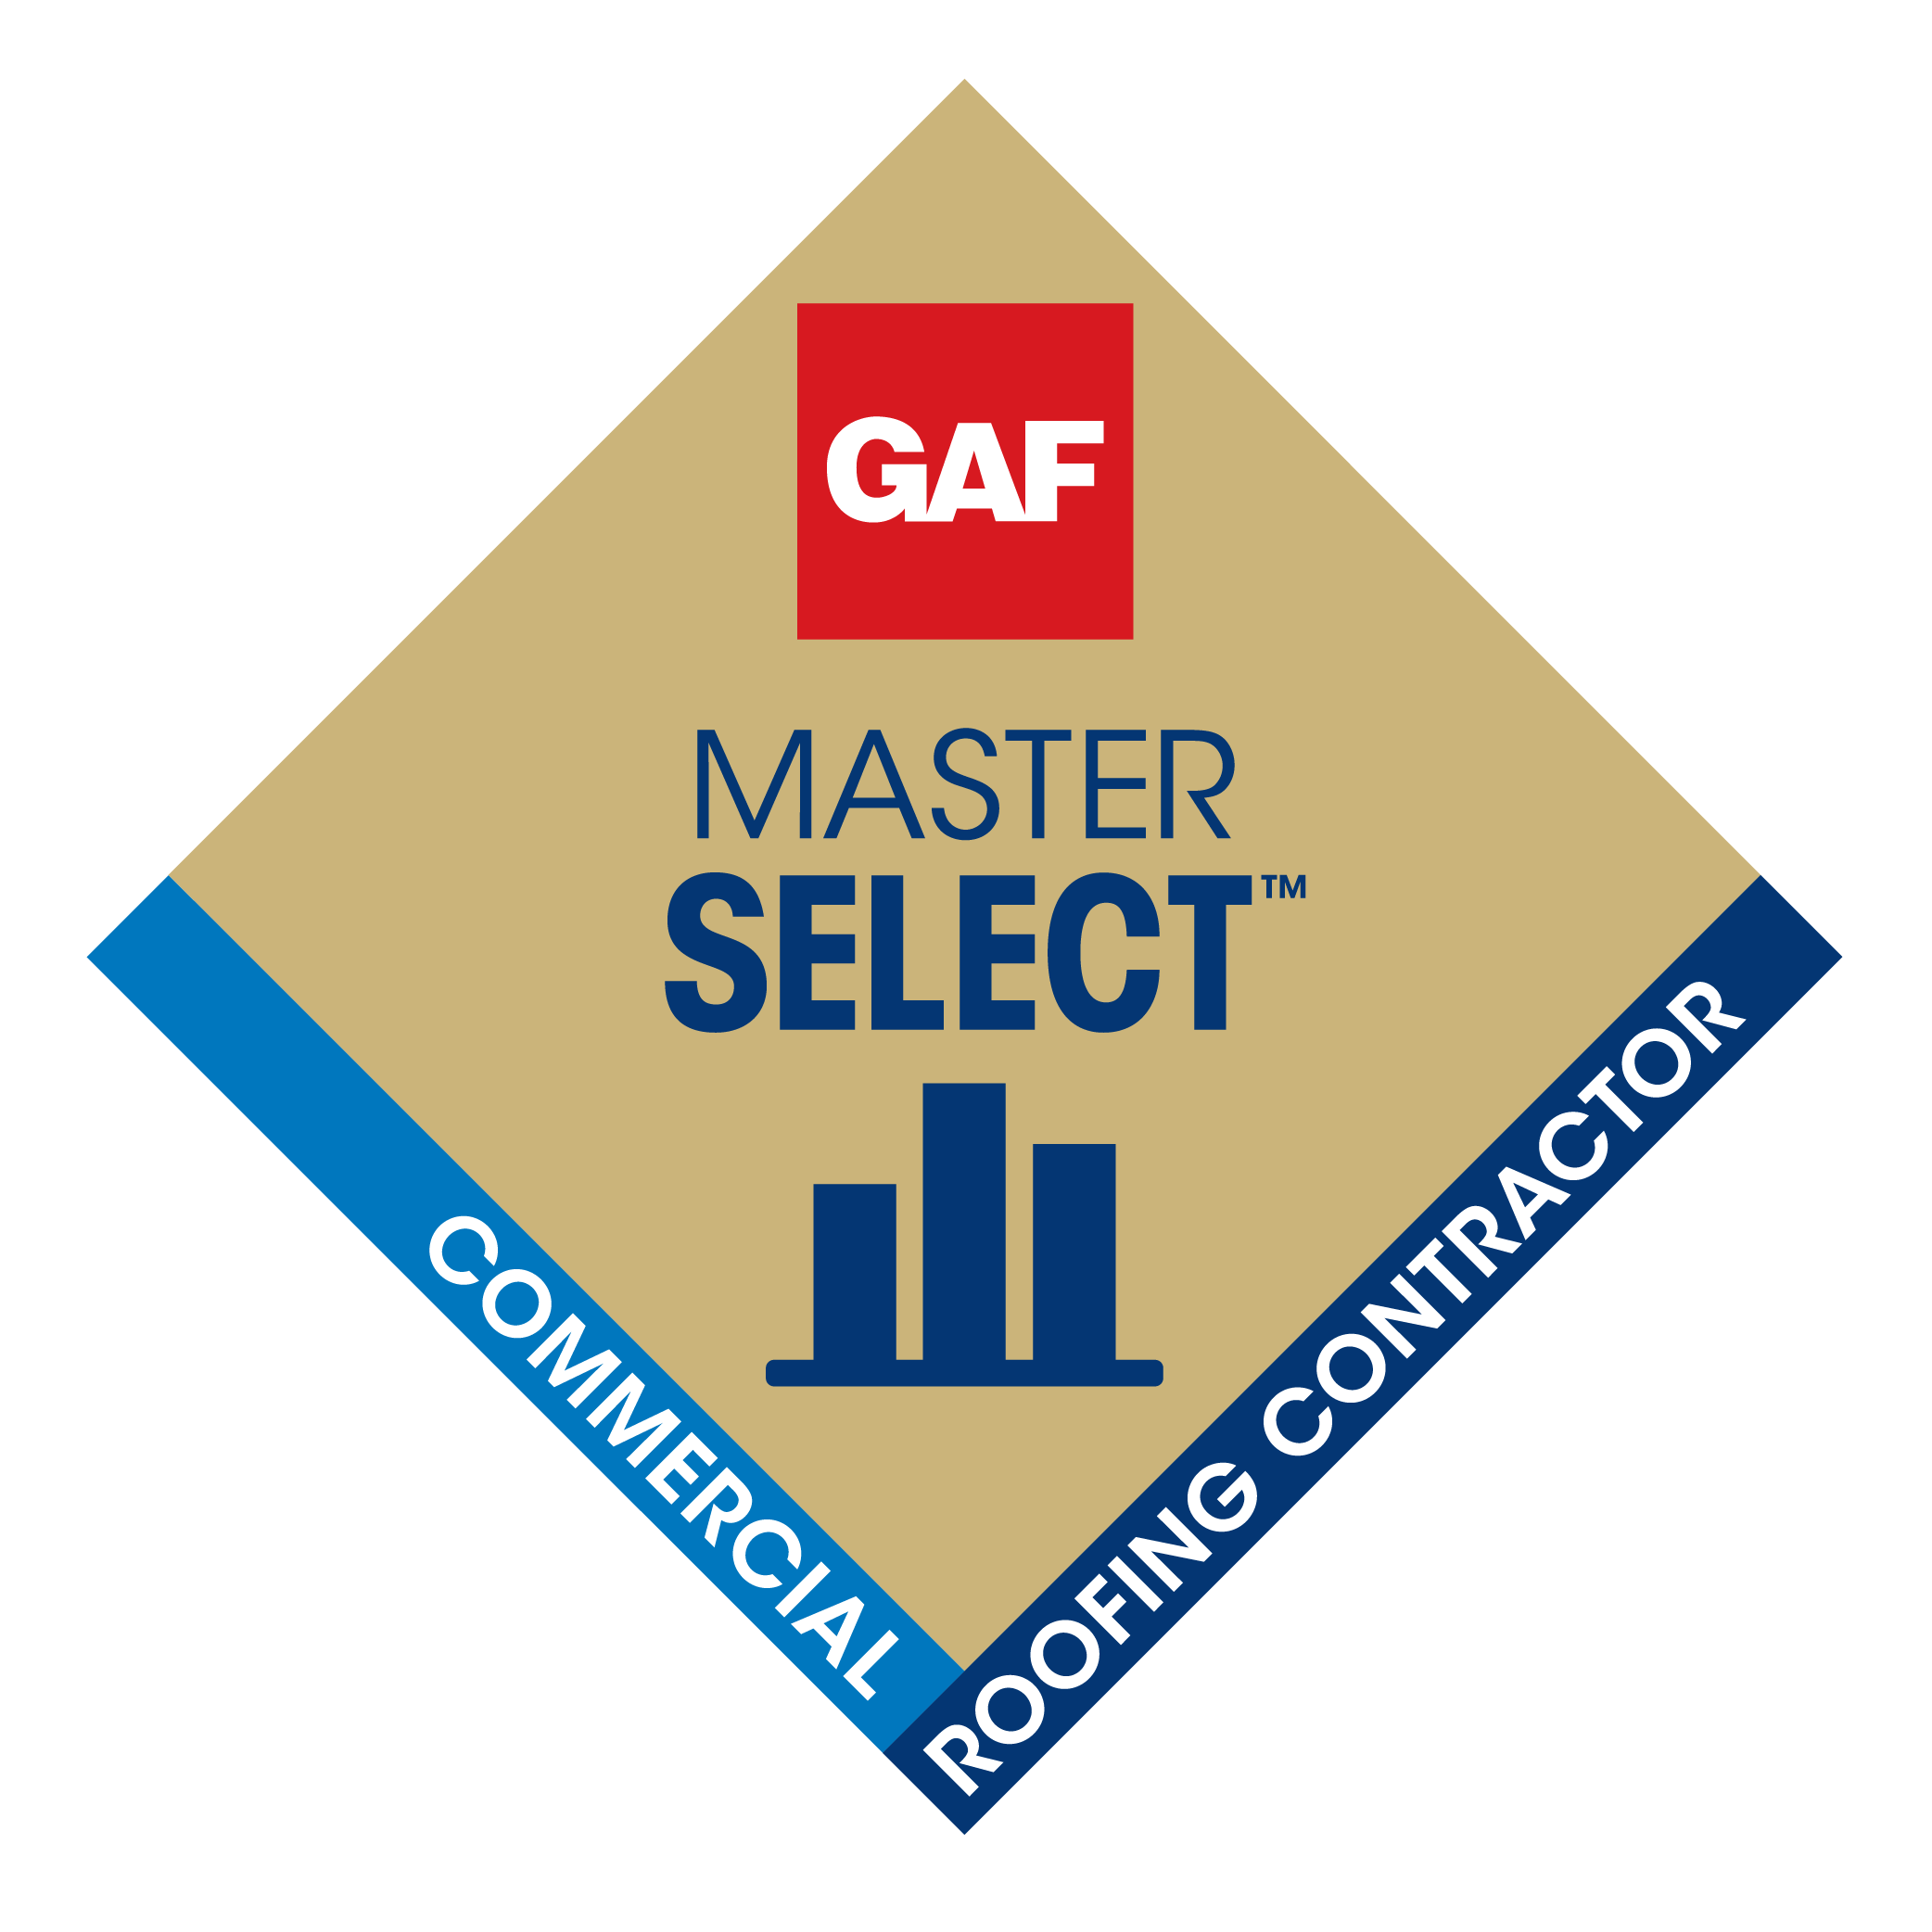 GAF-Master Select Award